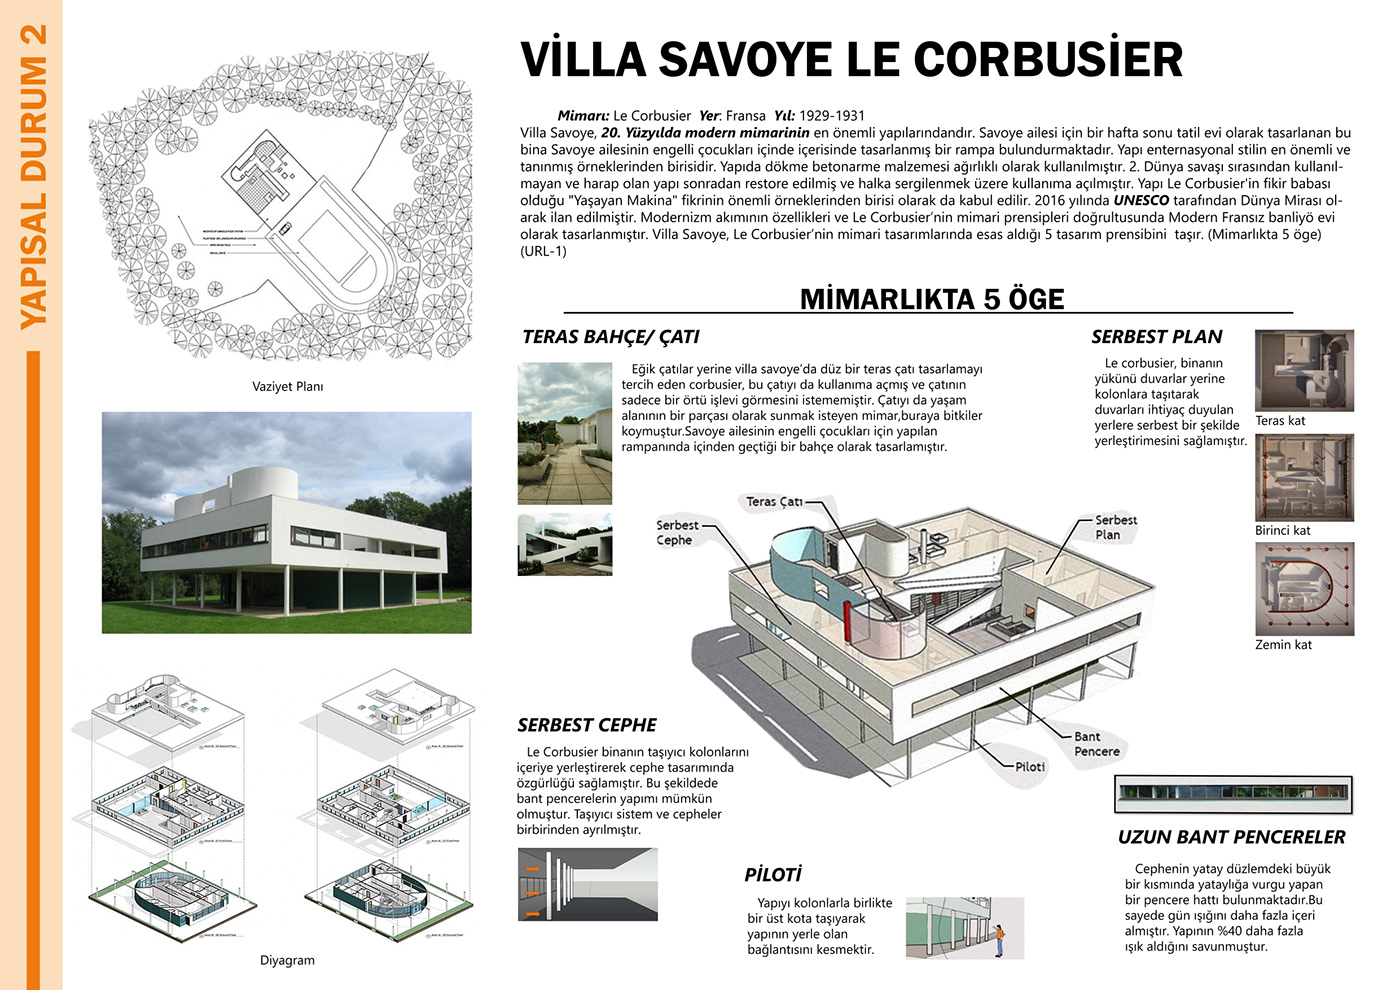 architecture tasarım Afiş Le Corbusier tasarımı